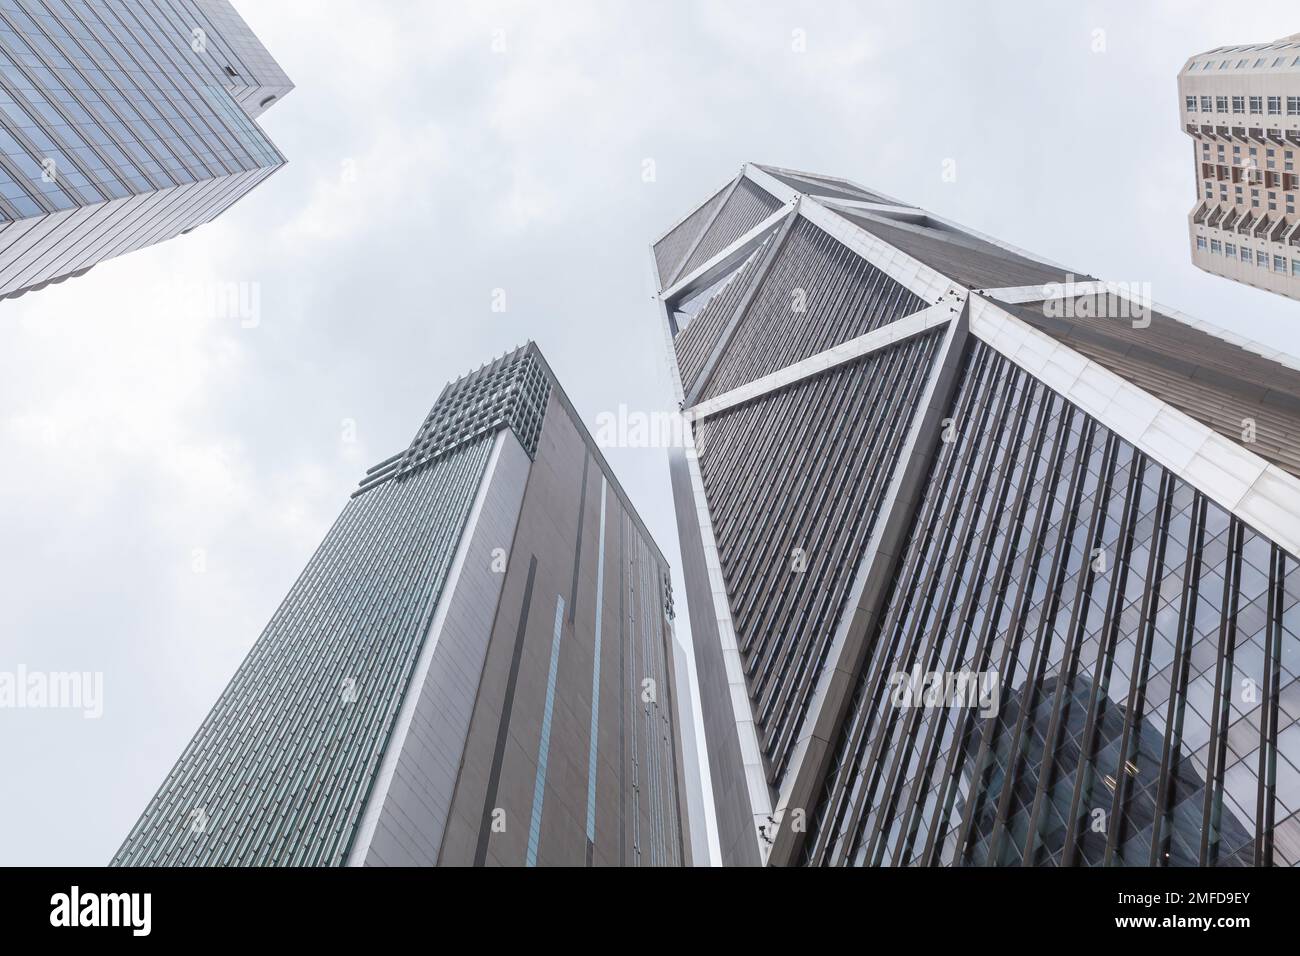 Kuala Lumpur, Malaisie - 25 novembre 2019: Kuala Lumpur centre-ville, les immeubles de bureaux modernes sont sous ciel nuageux et lumineux Banque D'Images